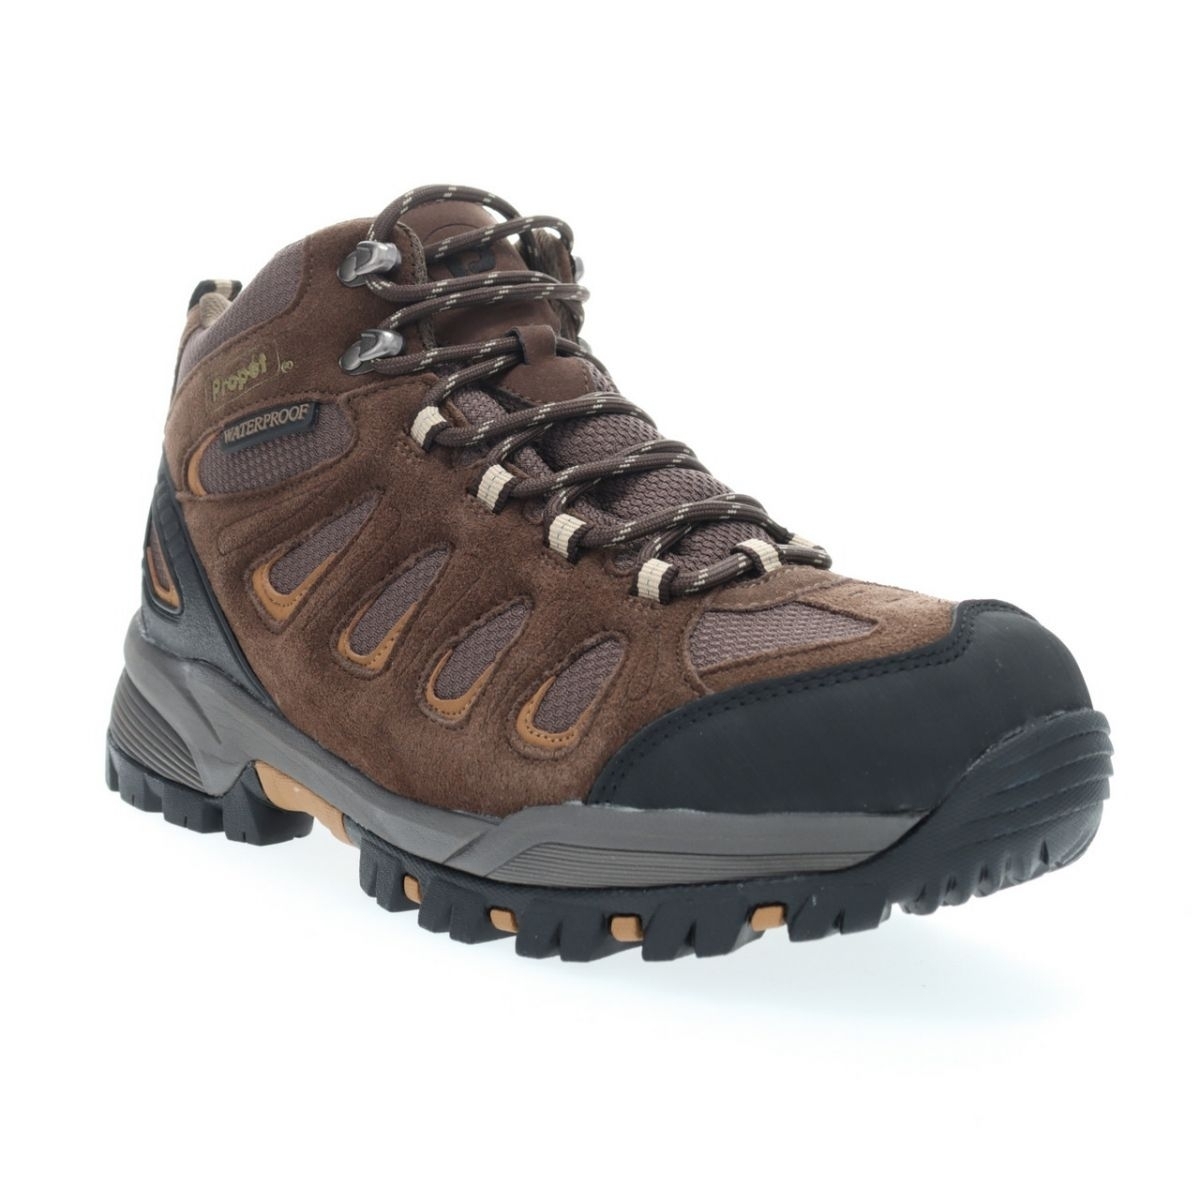 Propet Men's Ridge Walker Hiking Boot Brown - M3599BR 8 XX US Men BROWN - BROWN, 9.5 Wide